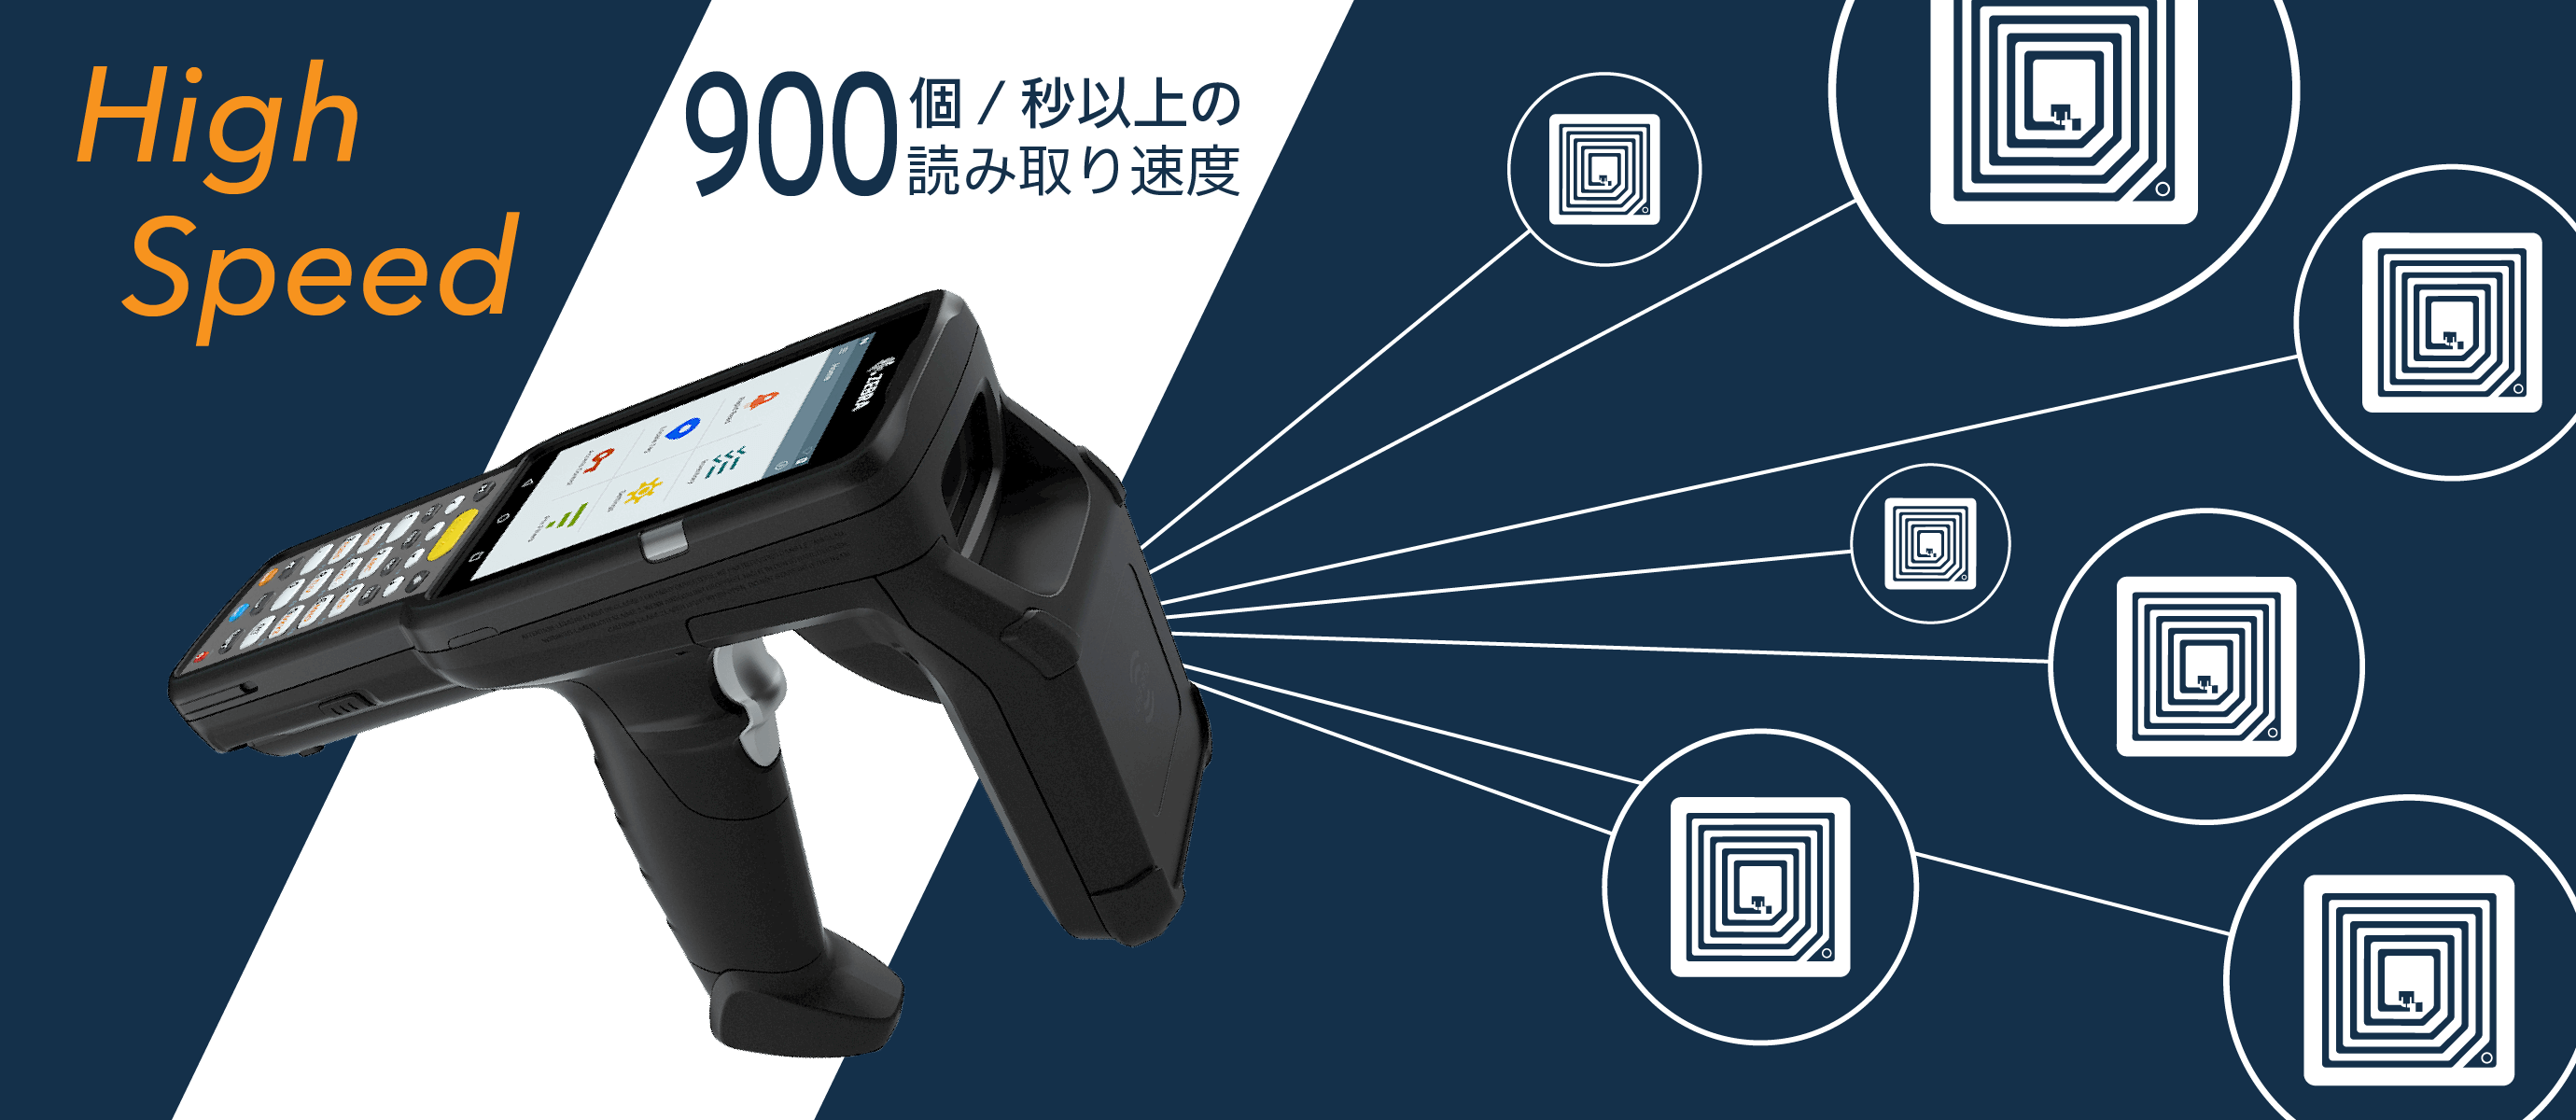 秒速900枚以上のICタグを読み取ることができる高性能RFIDリーダーです